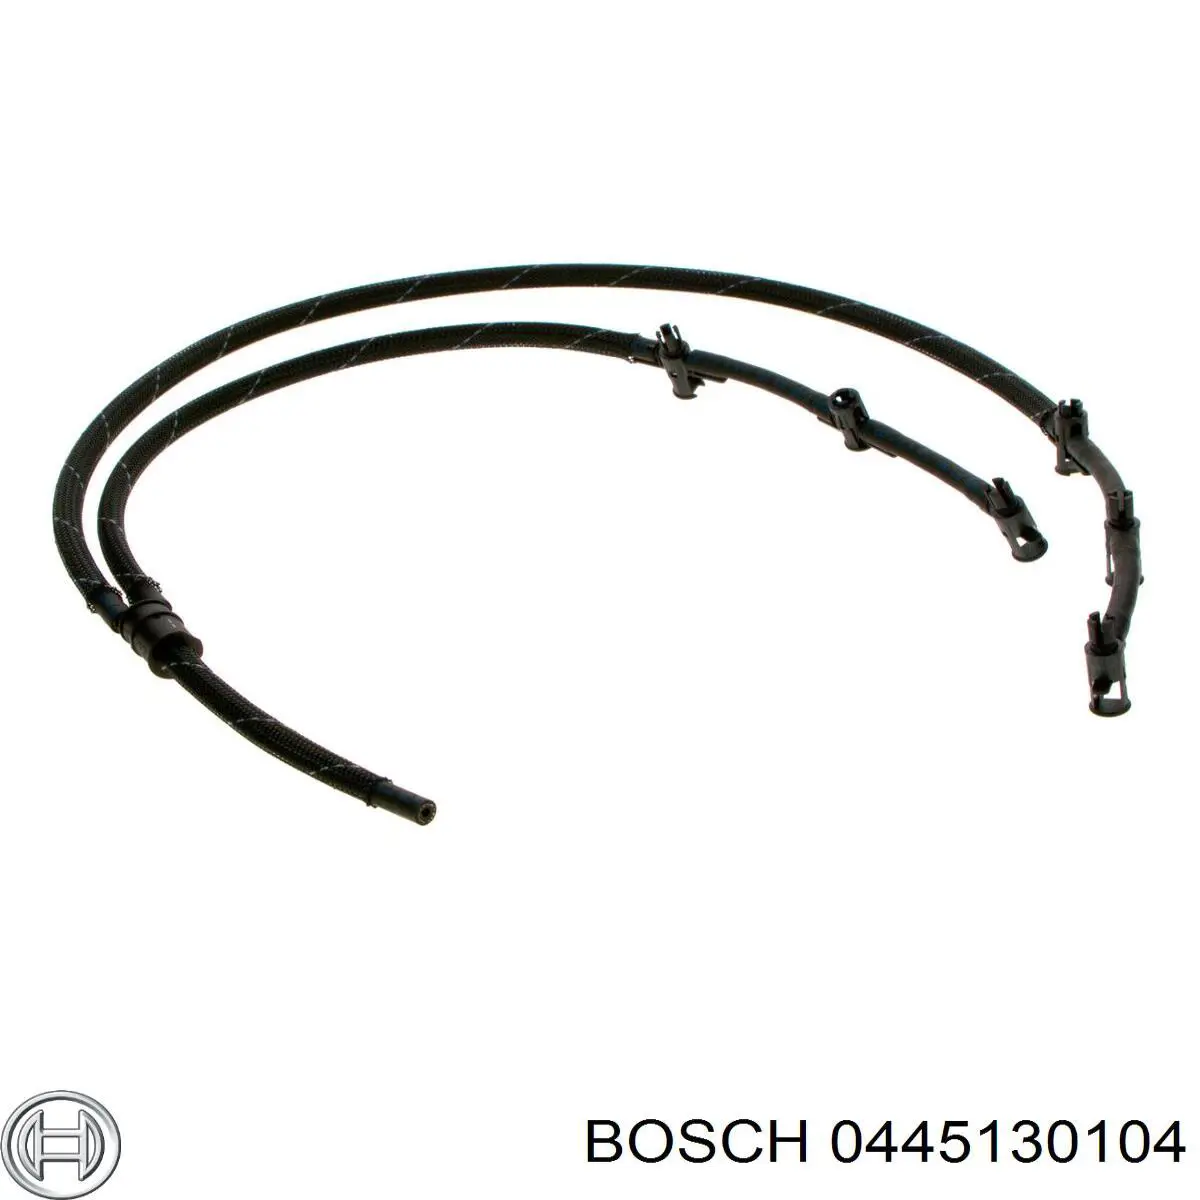 0445130104 Bosch tubo de combustible atras de las boquillas